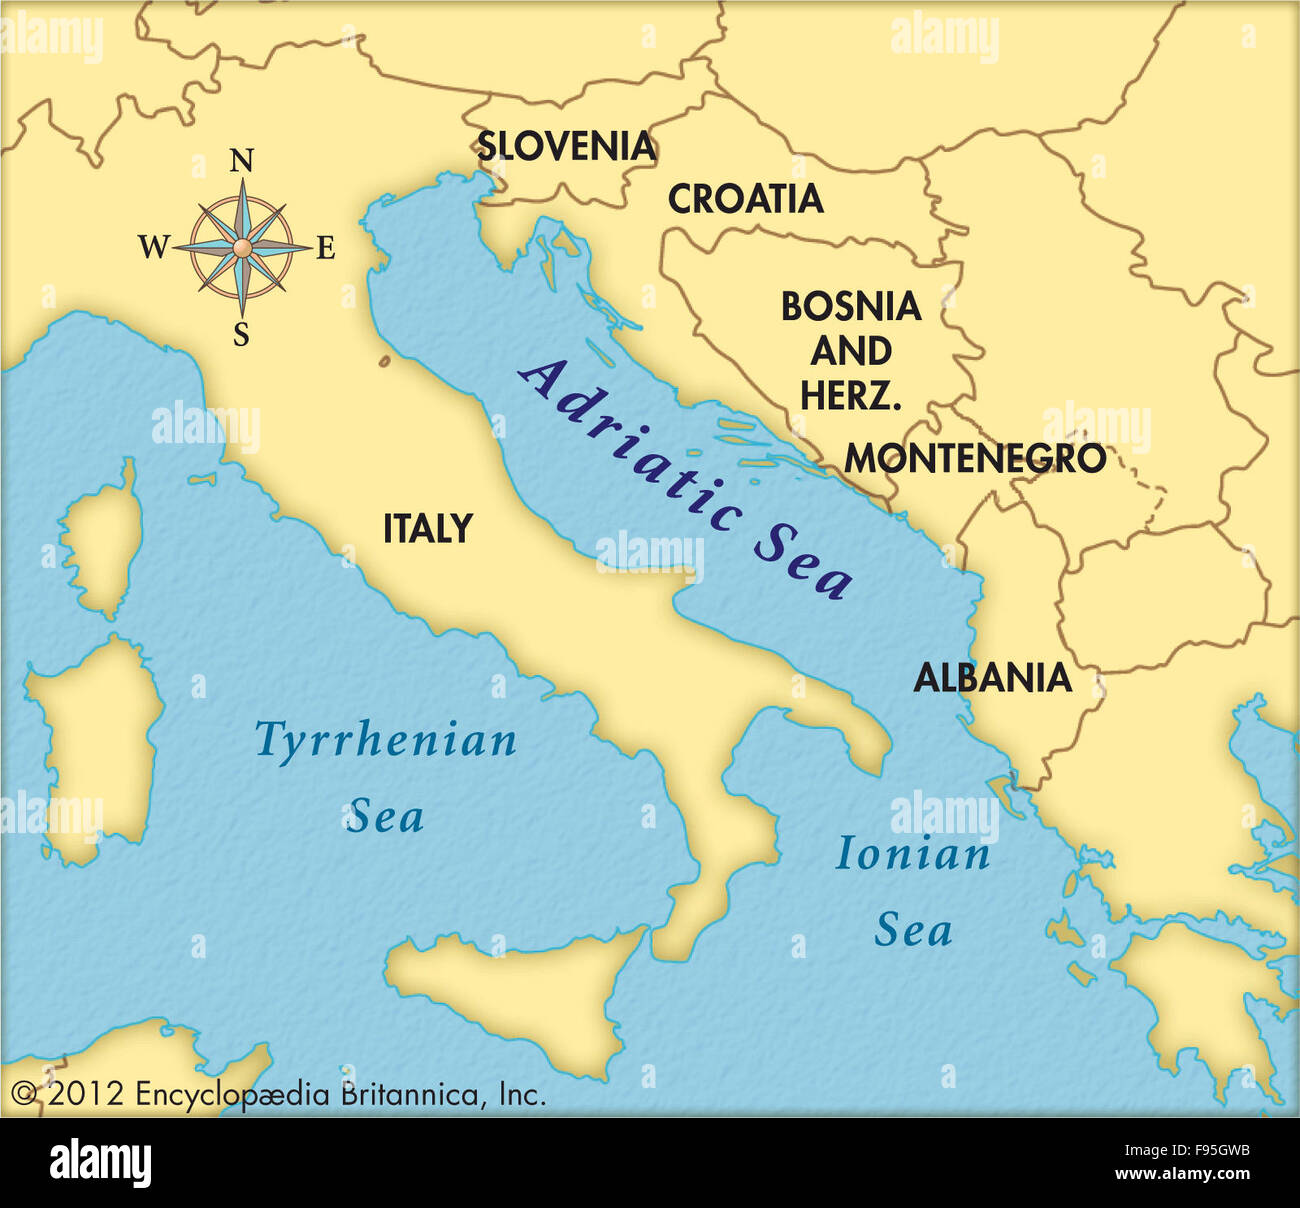 carte pays mer adriatique